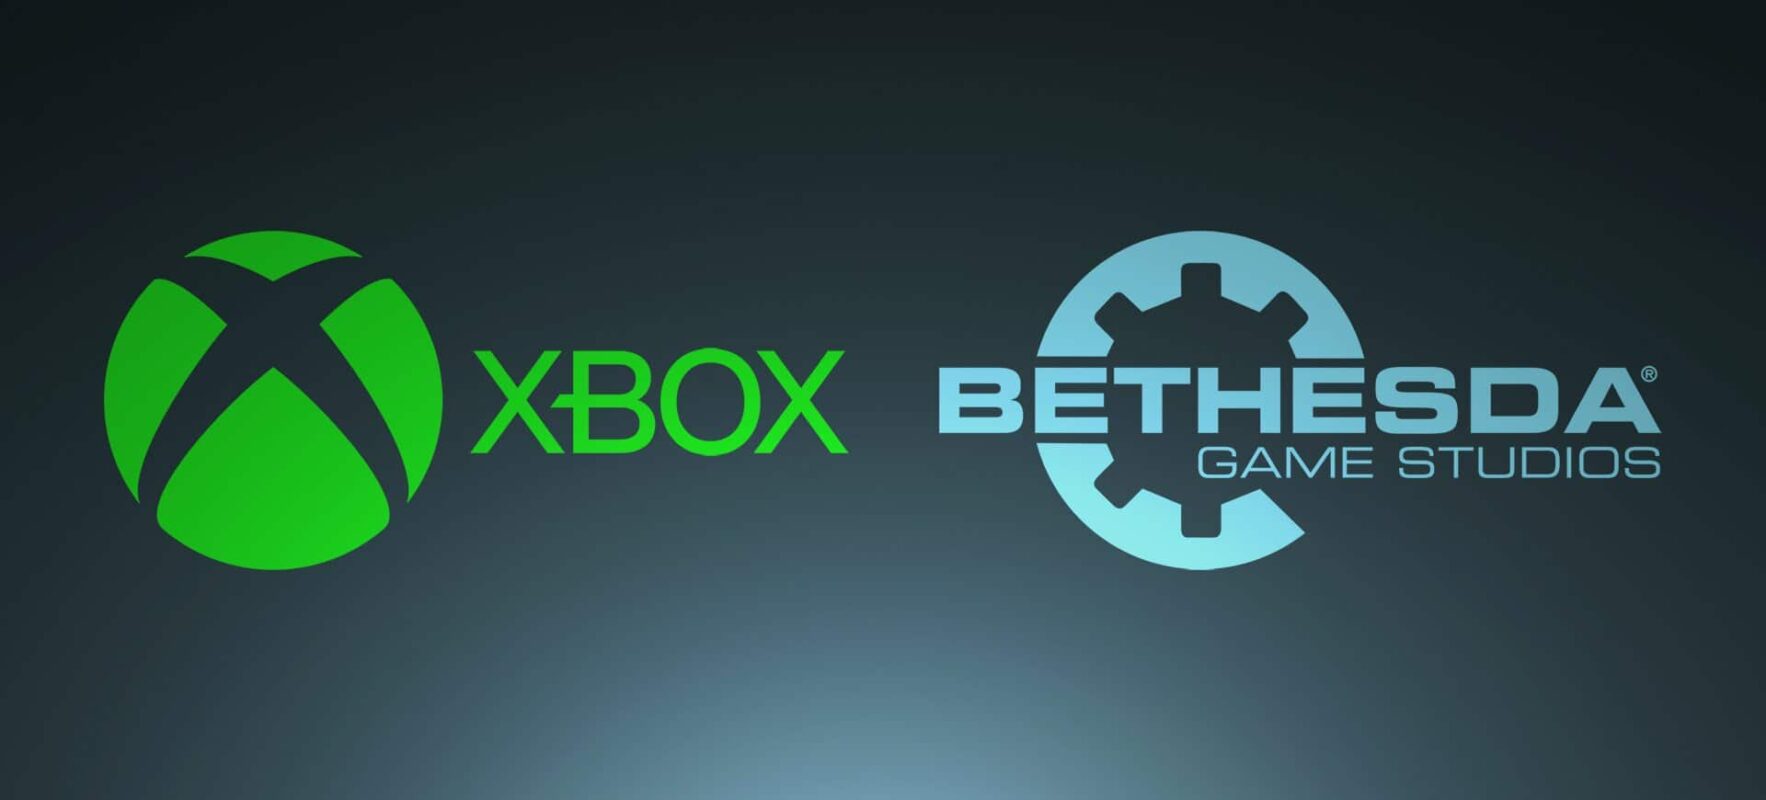 Bethesda : Microsoft confirme l'exclusivité Xbox et PC ! - Cultea